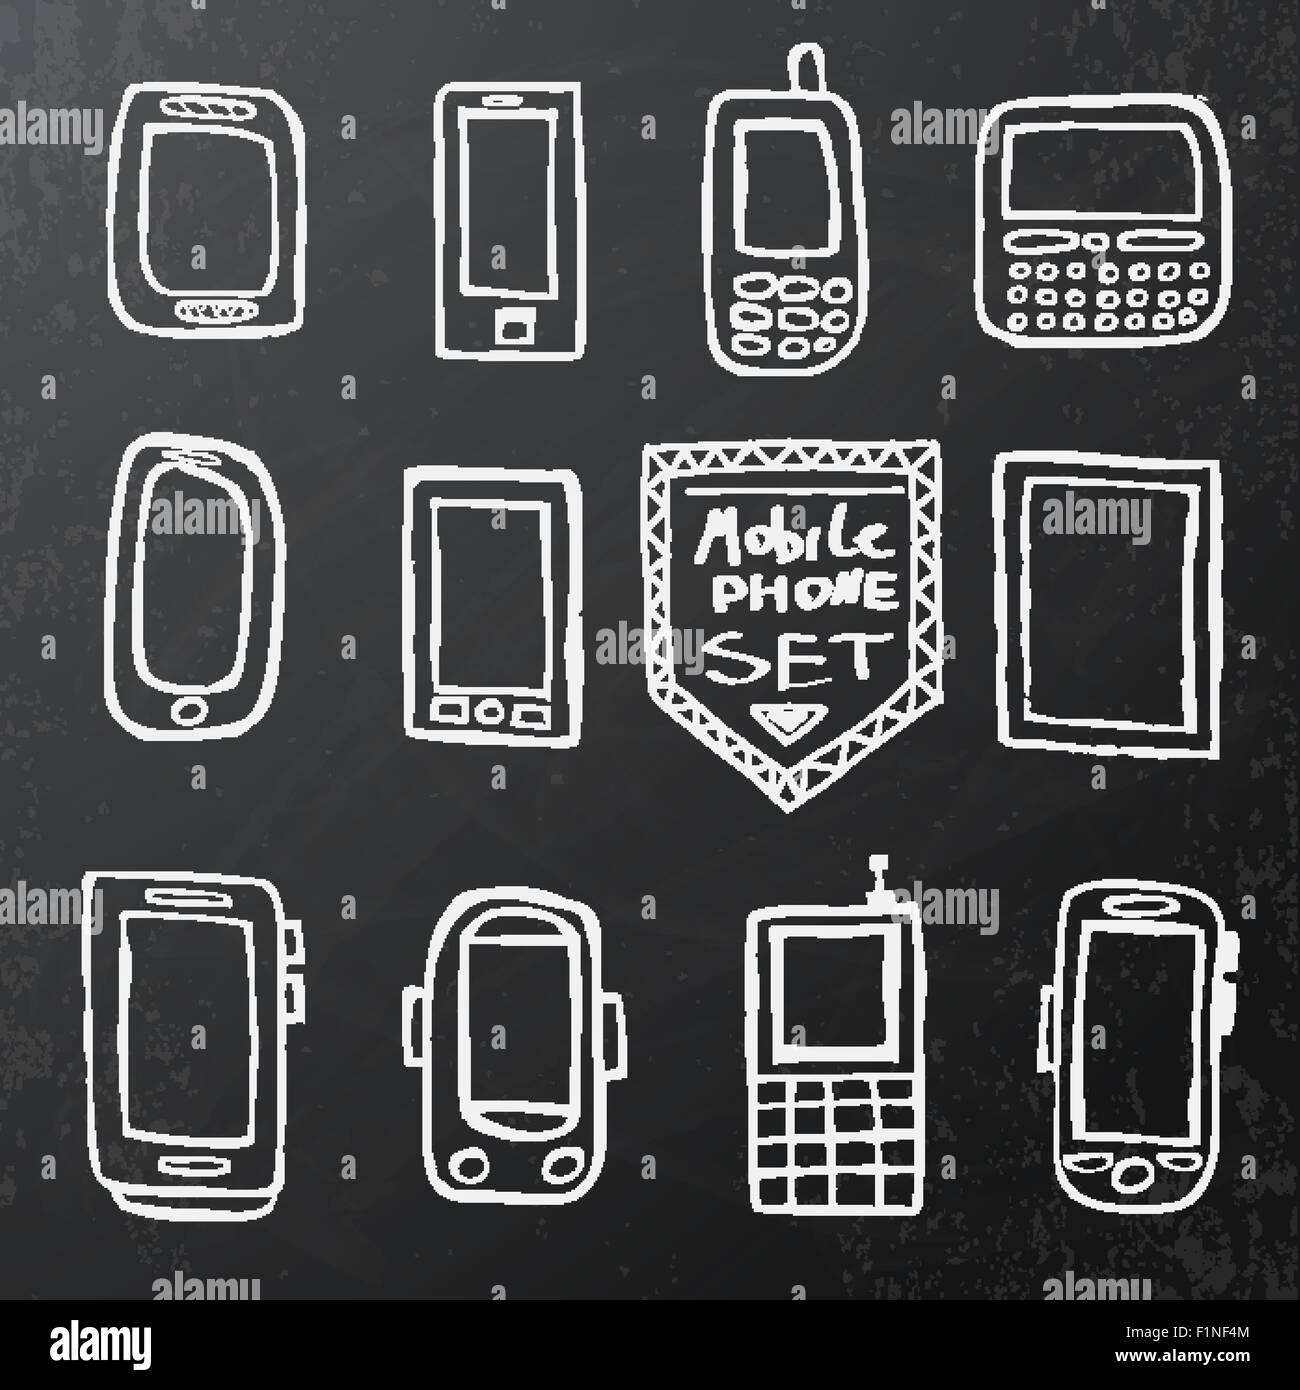 Disegnata a mano insieme di isolati gadget mobile sul gesso nero bordo. Illustrazione Vettoriale Illustrazione Vettoriale